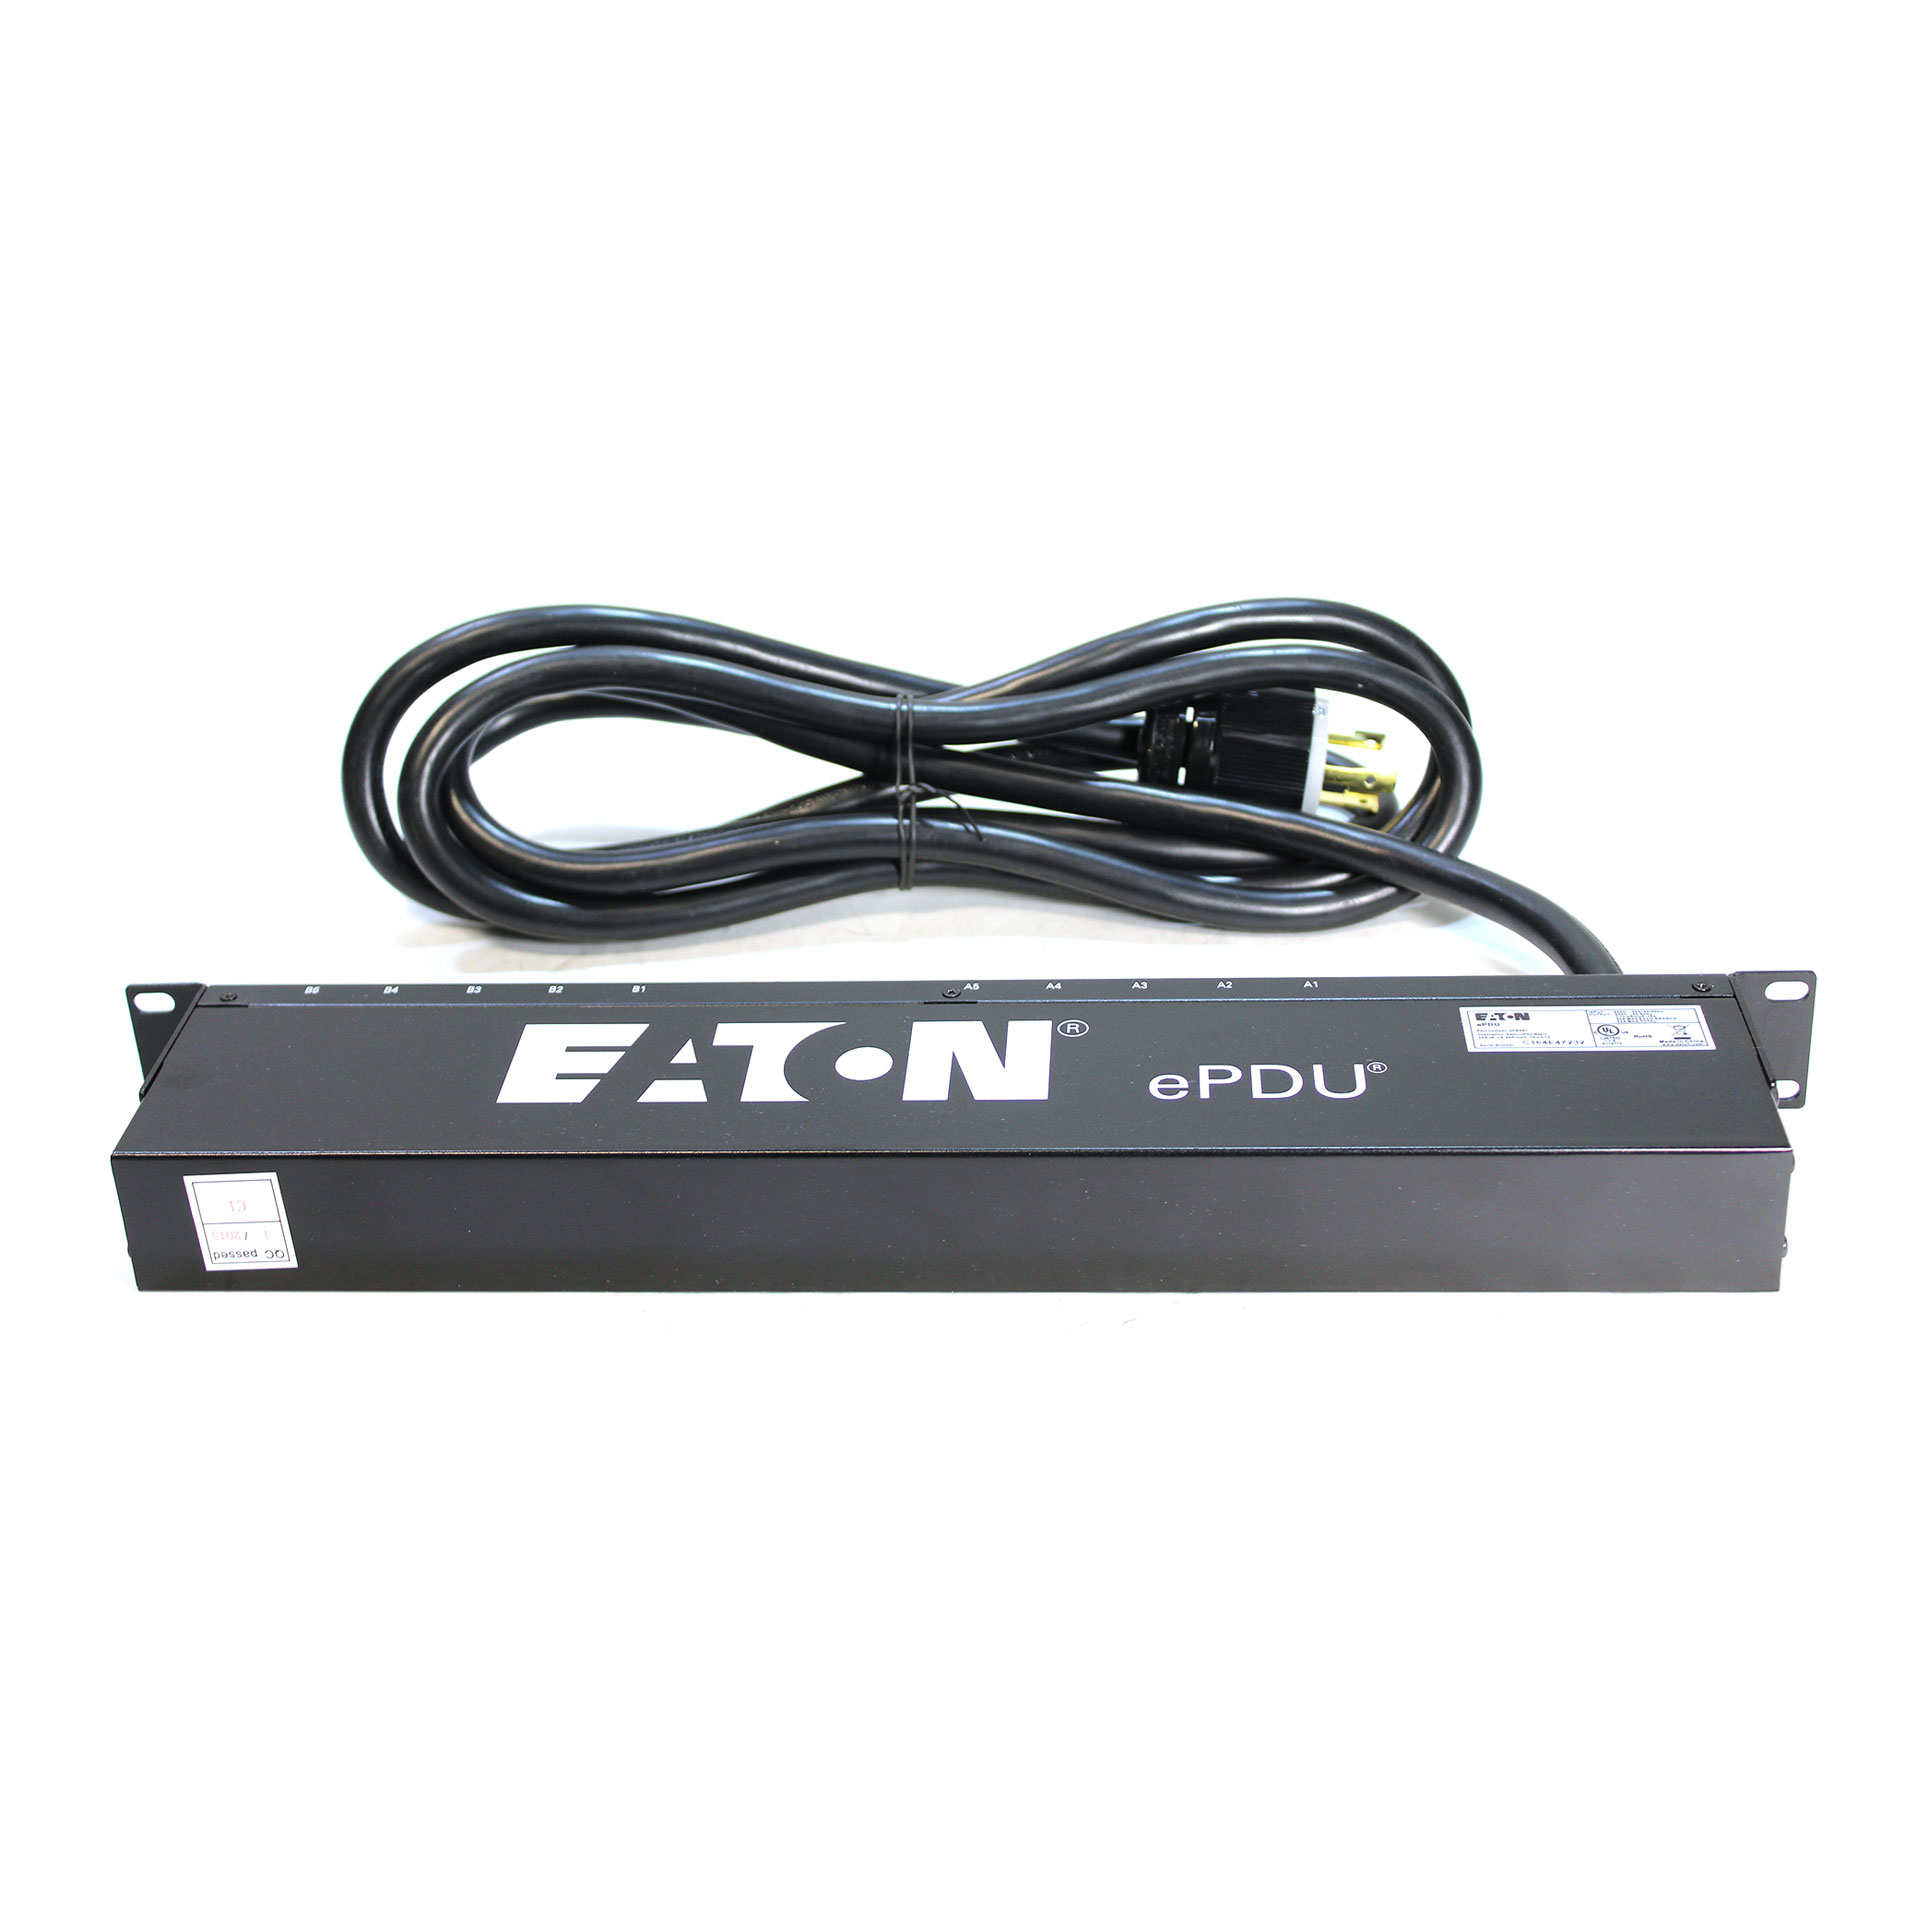 Eaton EPBZ91 ePDU Basic Power Distribution Unit 4.99kW# - Click Image to Close